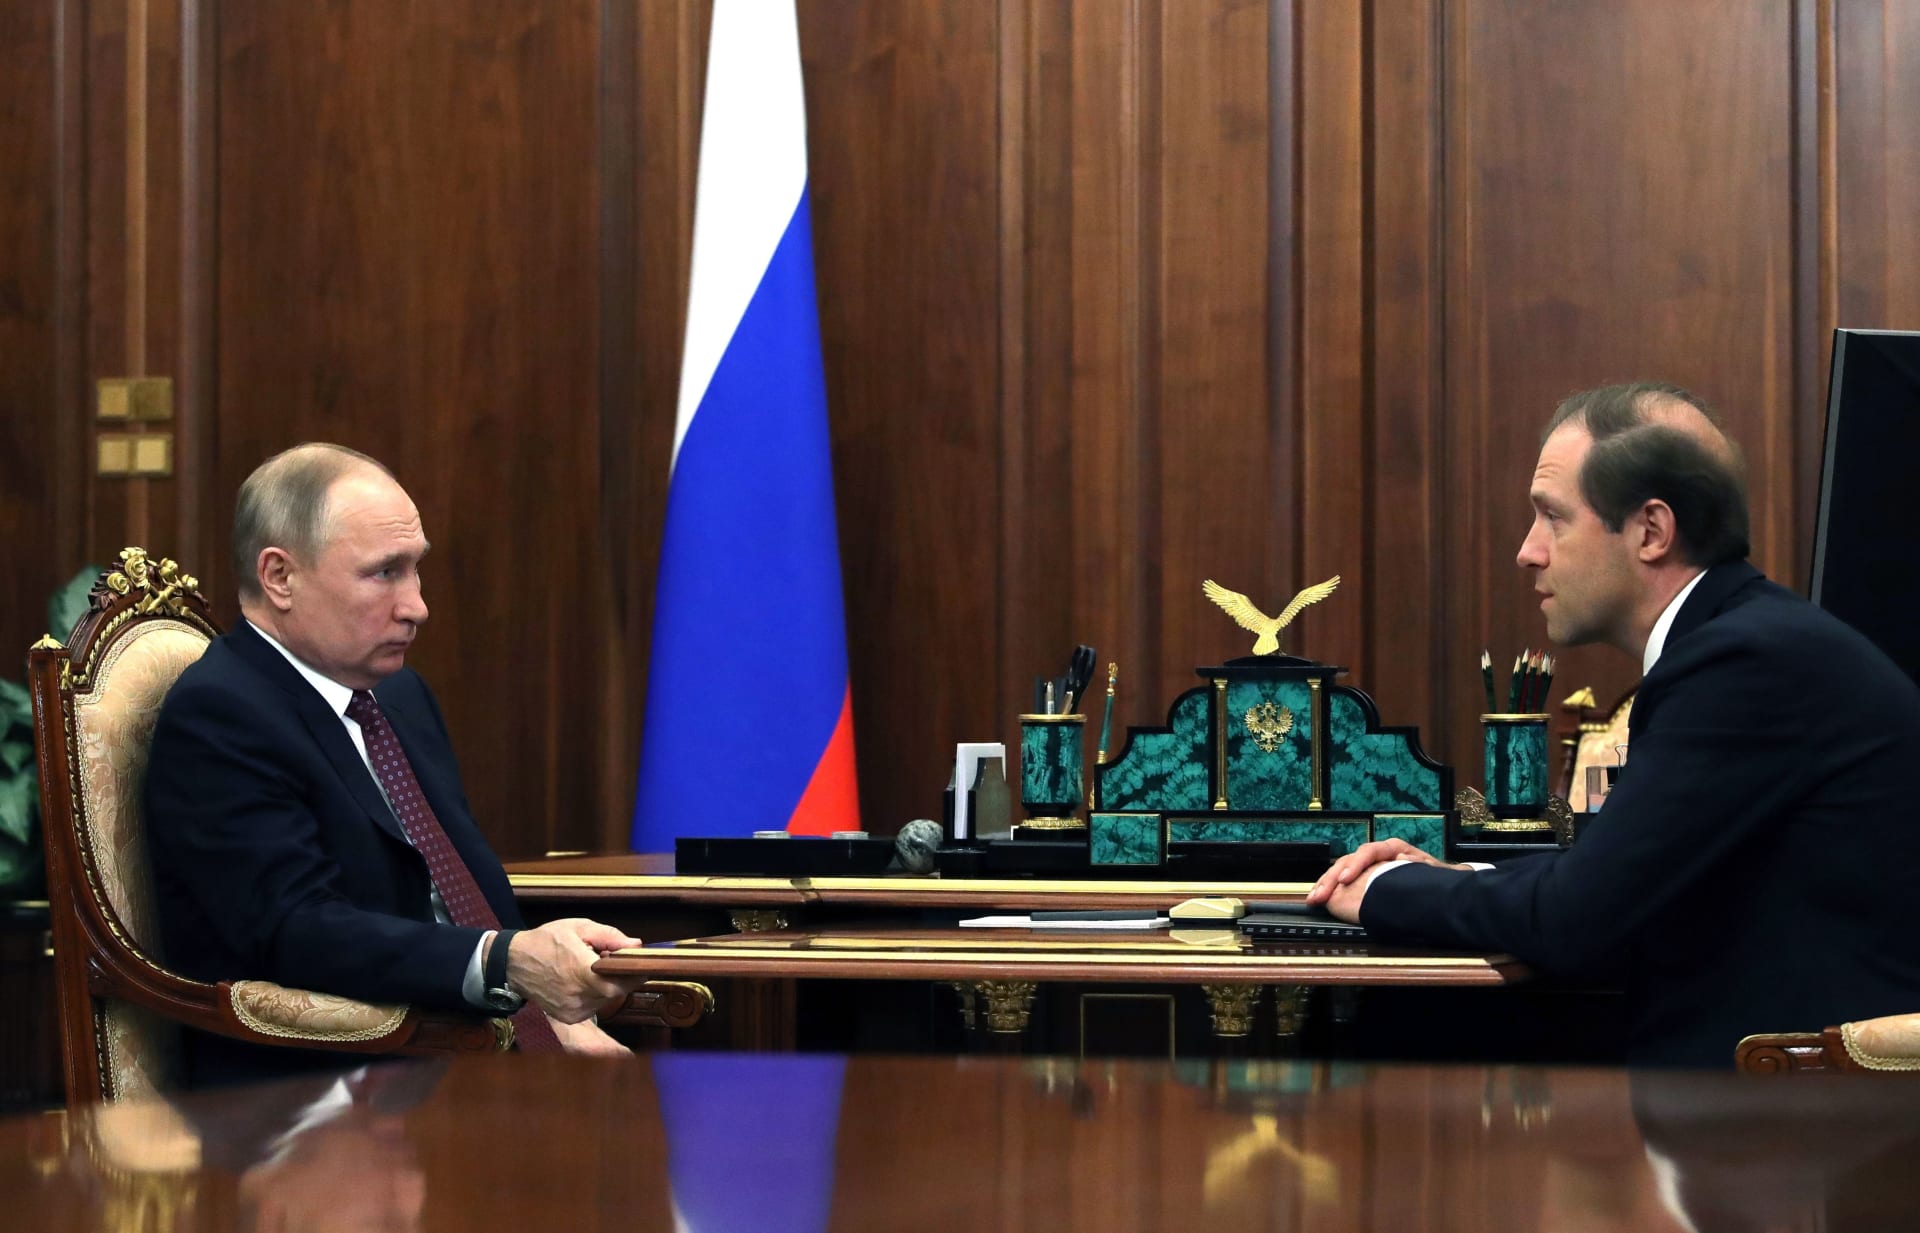 بوتين يوبخ وزير الصناعة والتجارة الروسي علنا